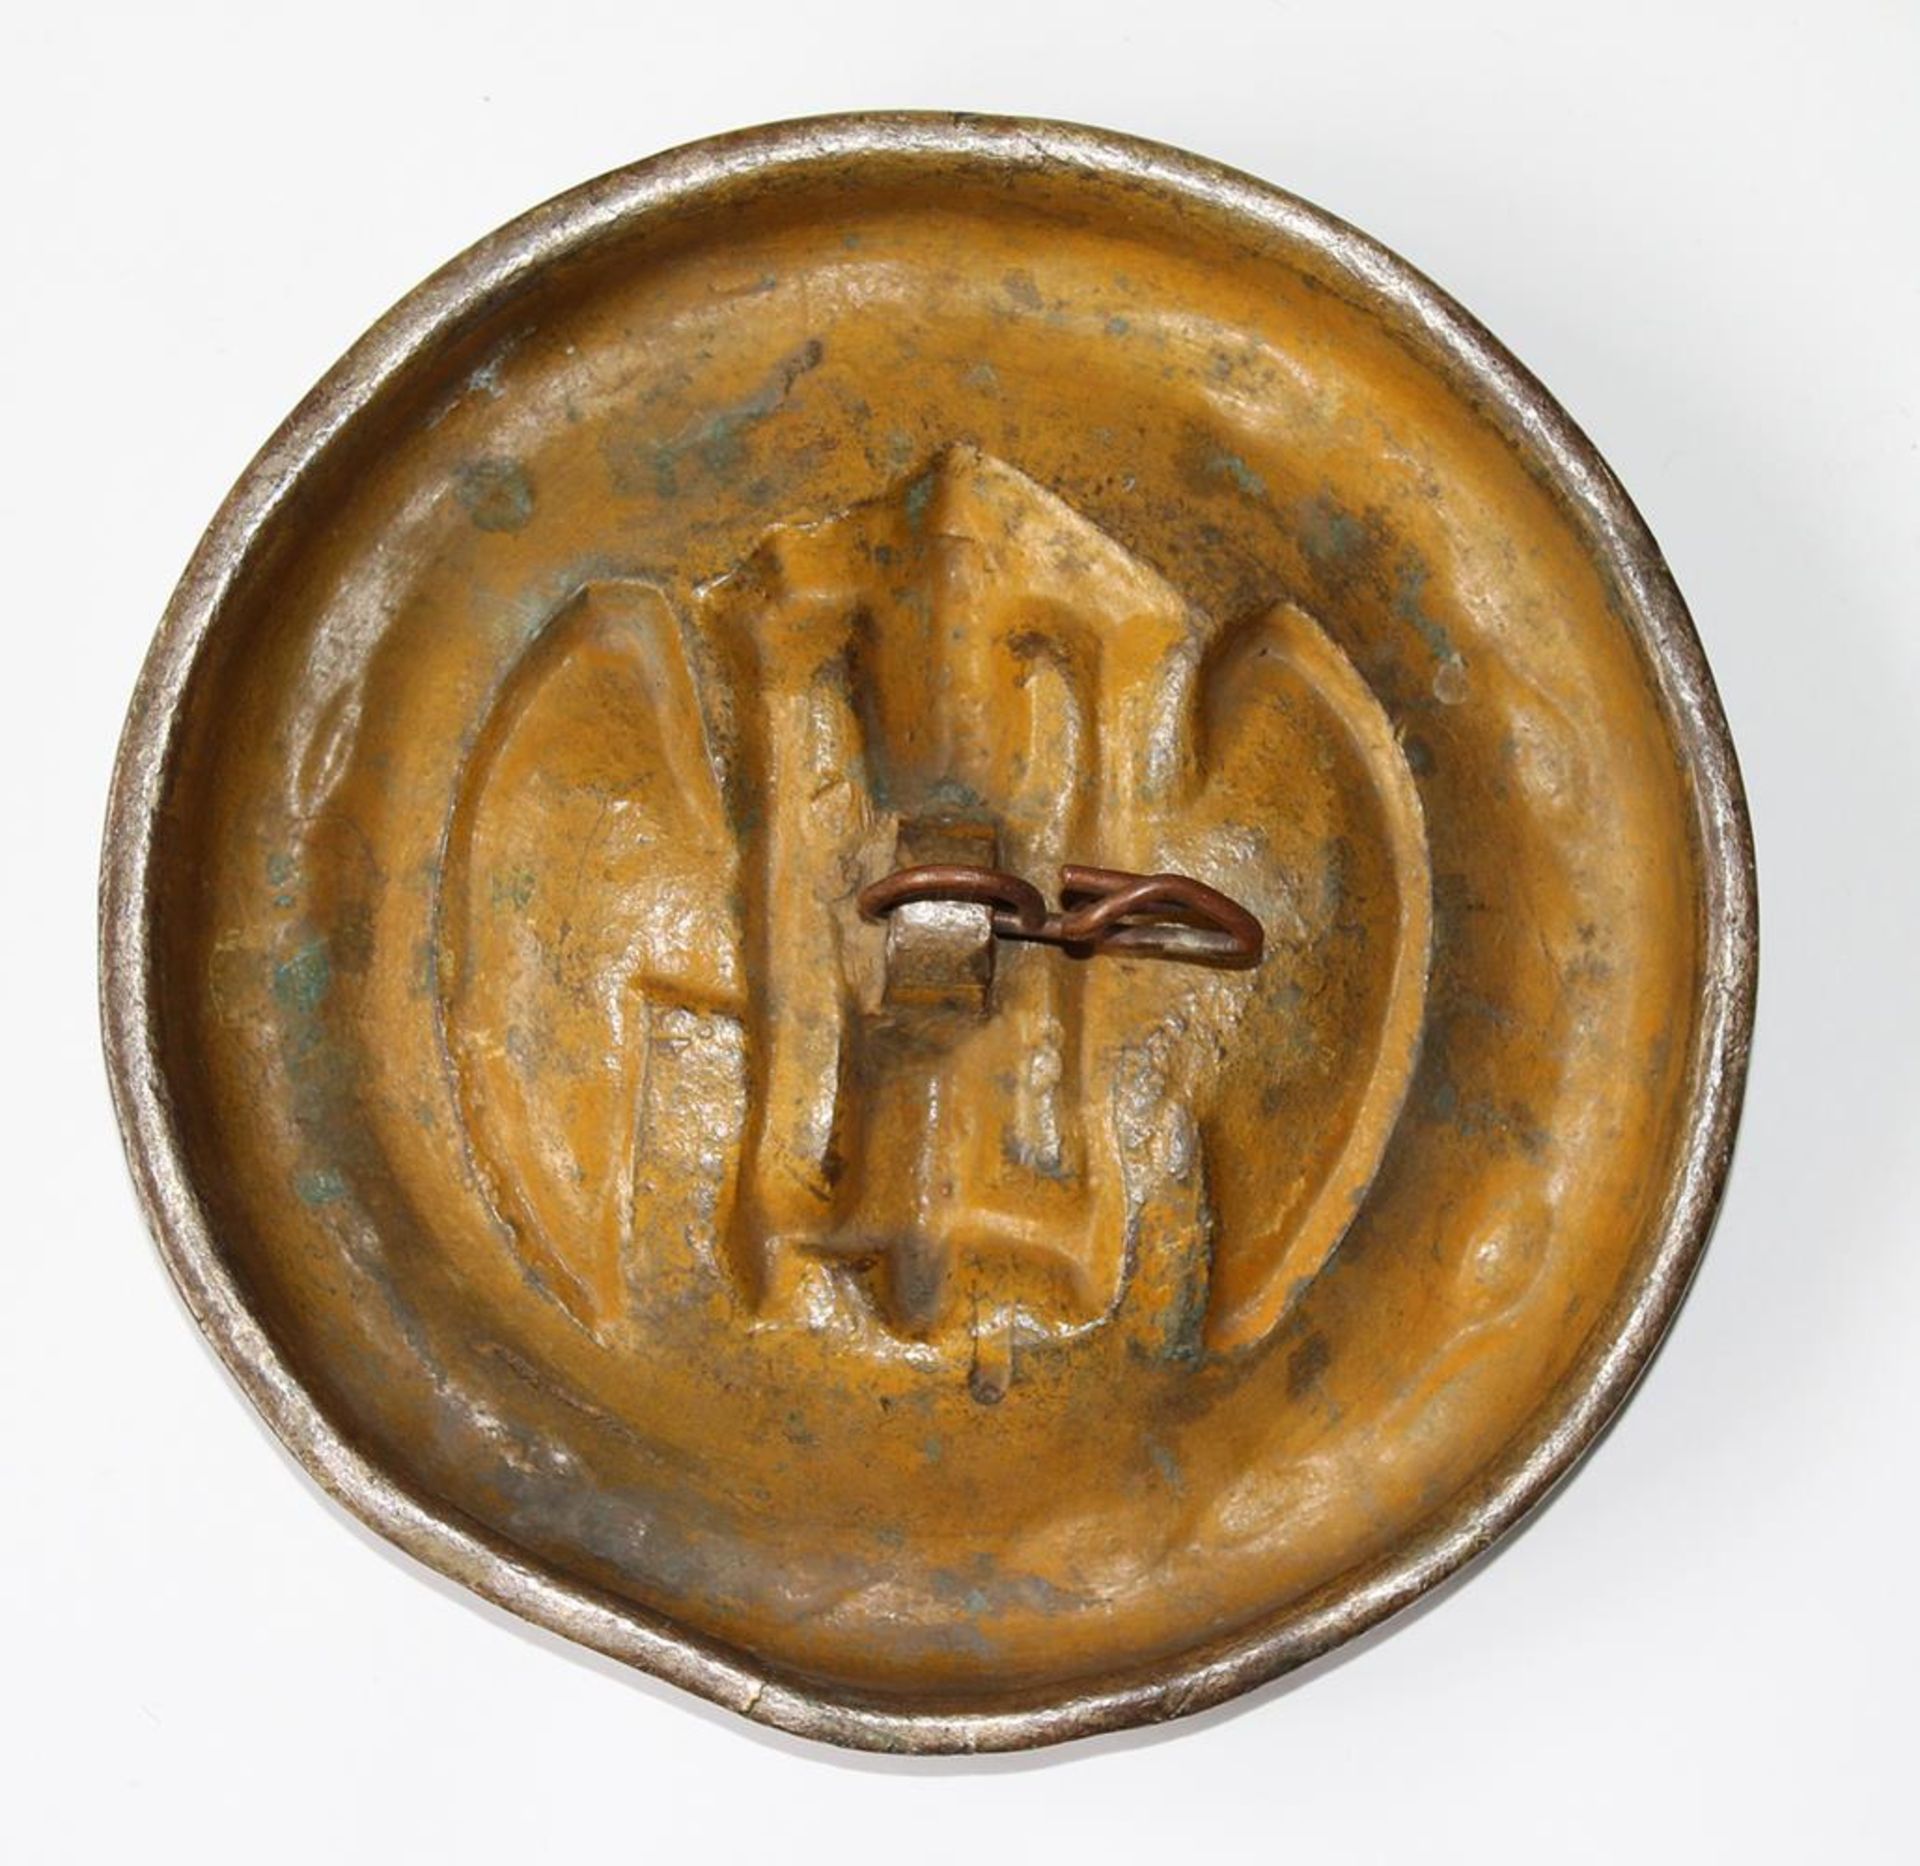 Sanduhr mit Flügeln.Bronzetafel mit Reliefdekor. Zentral dargestellt die Sanduhr, das geflügelte - Bild 2 aus 2